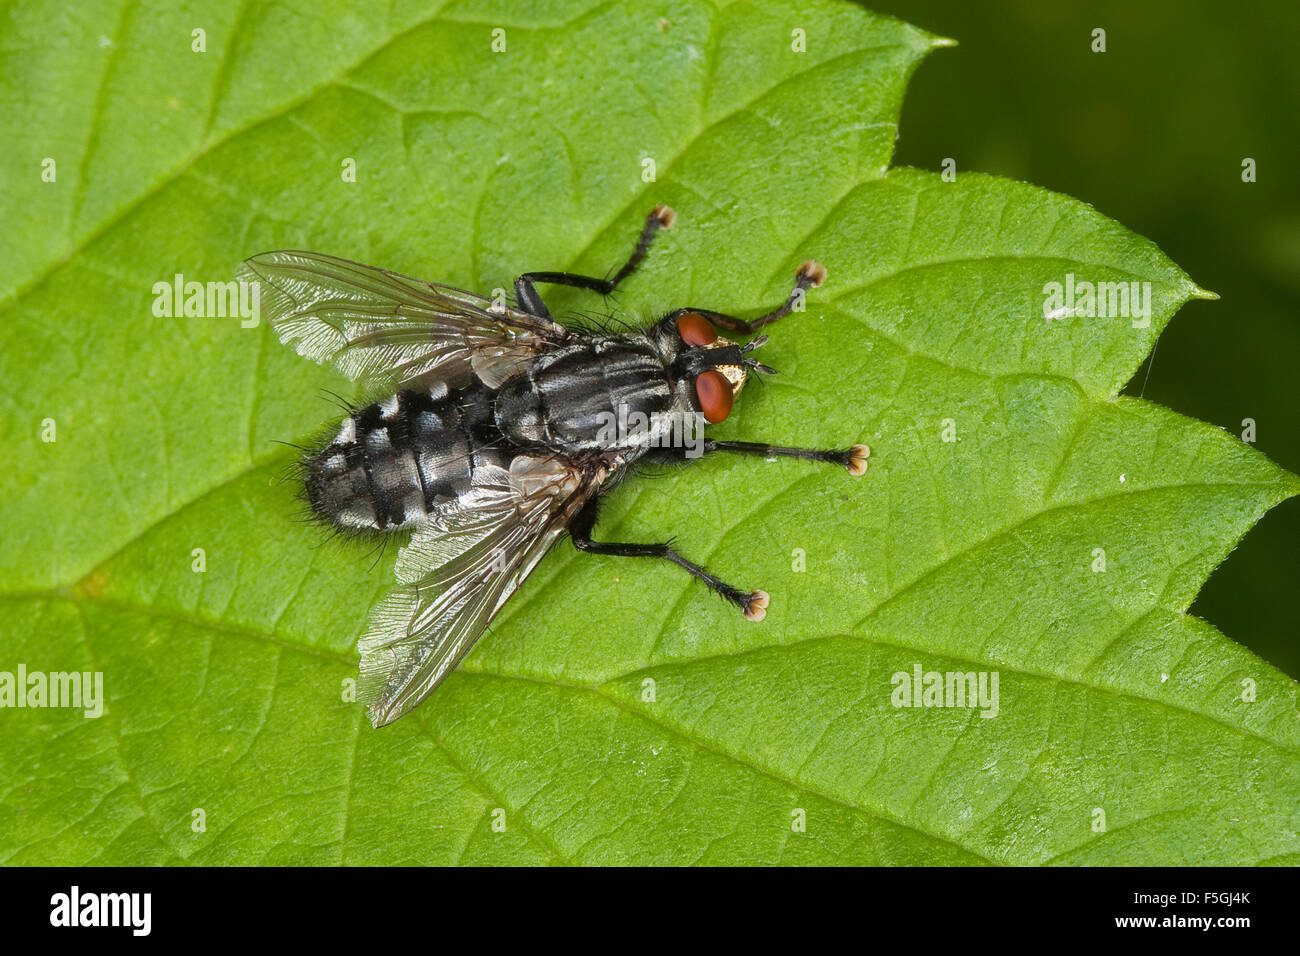 Fly, Fleshfly, flesh-fly, Fleischfliege, Fleisch-Fliege, Sarcophaga cf. carnaria, Sarcophagidae, Fleischfliegen, fleshflies Stock Photo